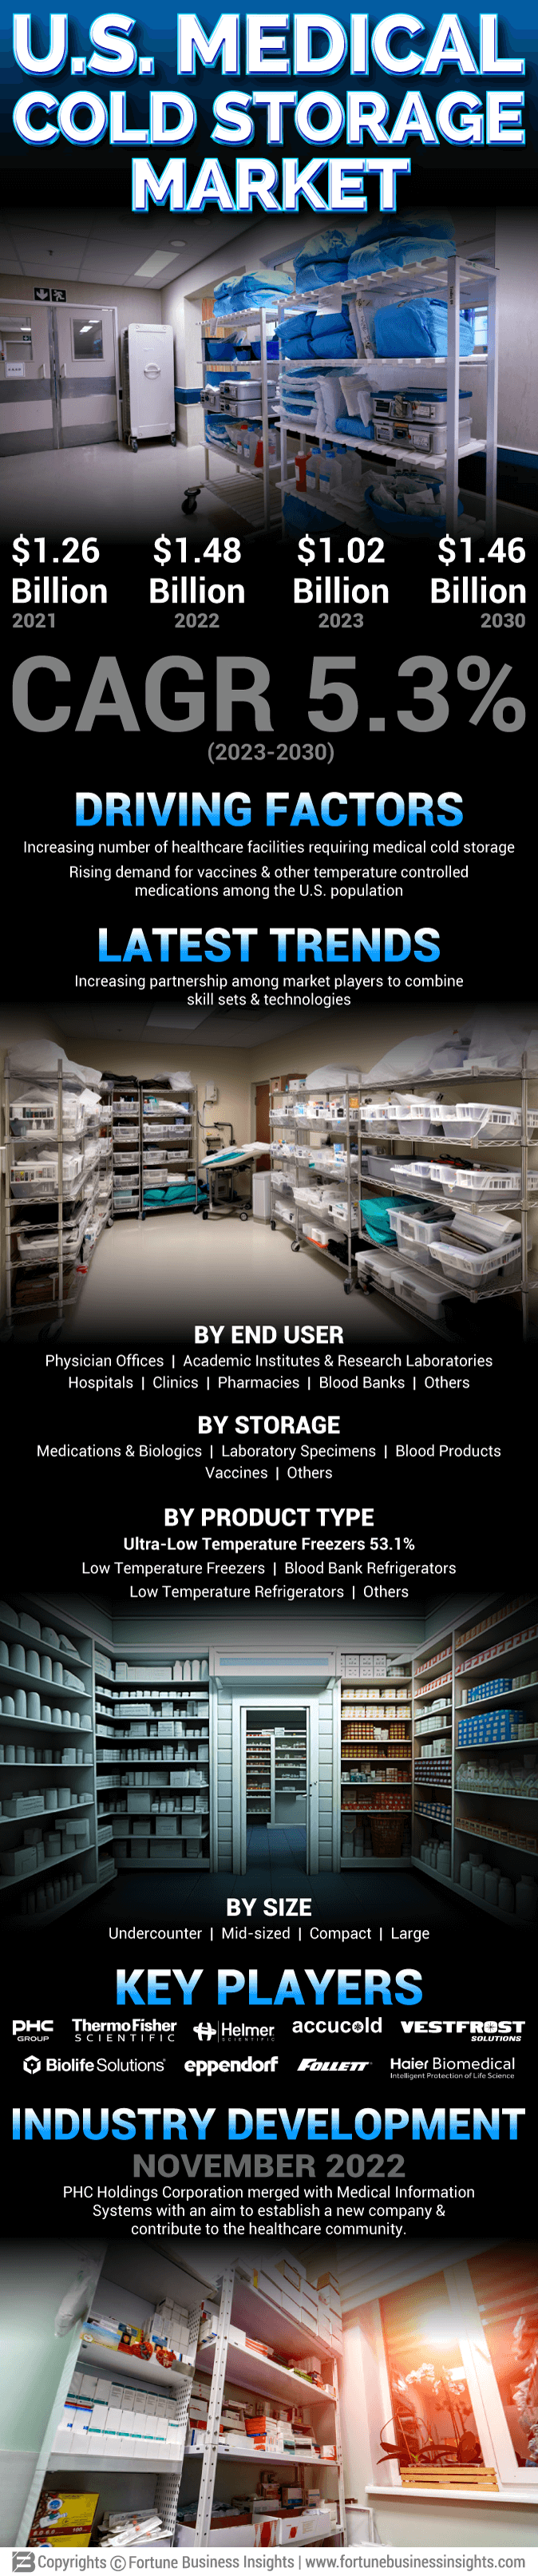 U.S. Medical Cold Storage Market